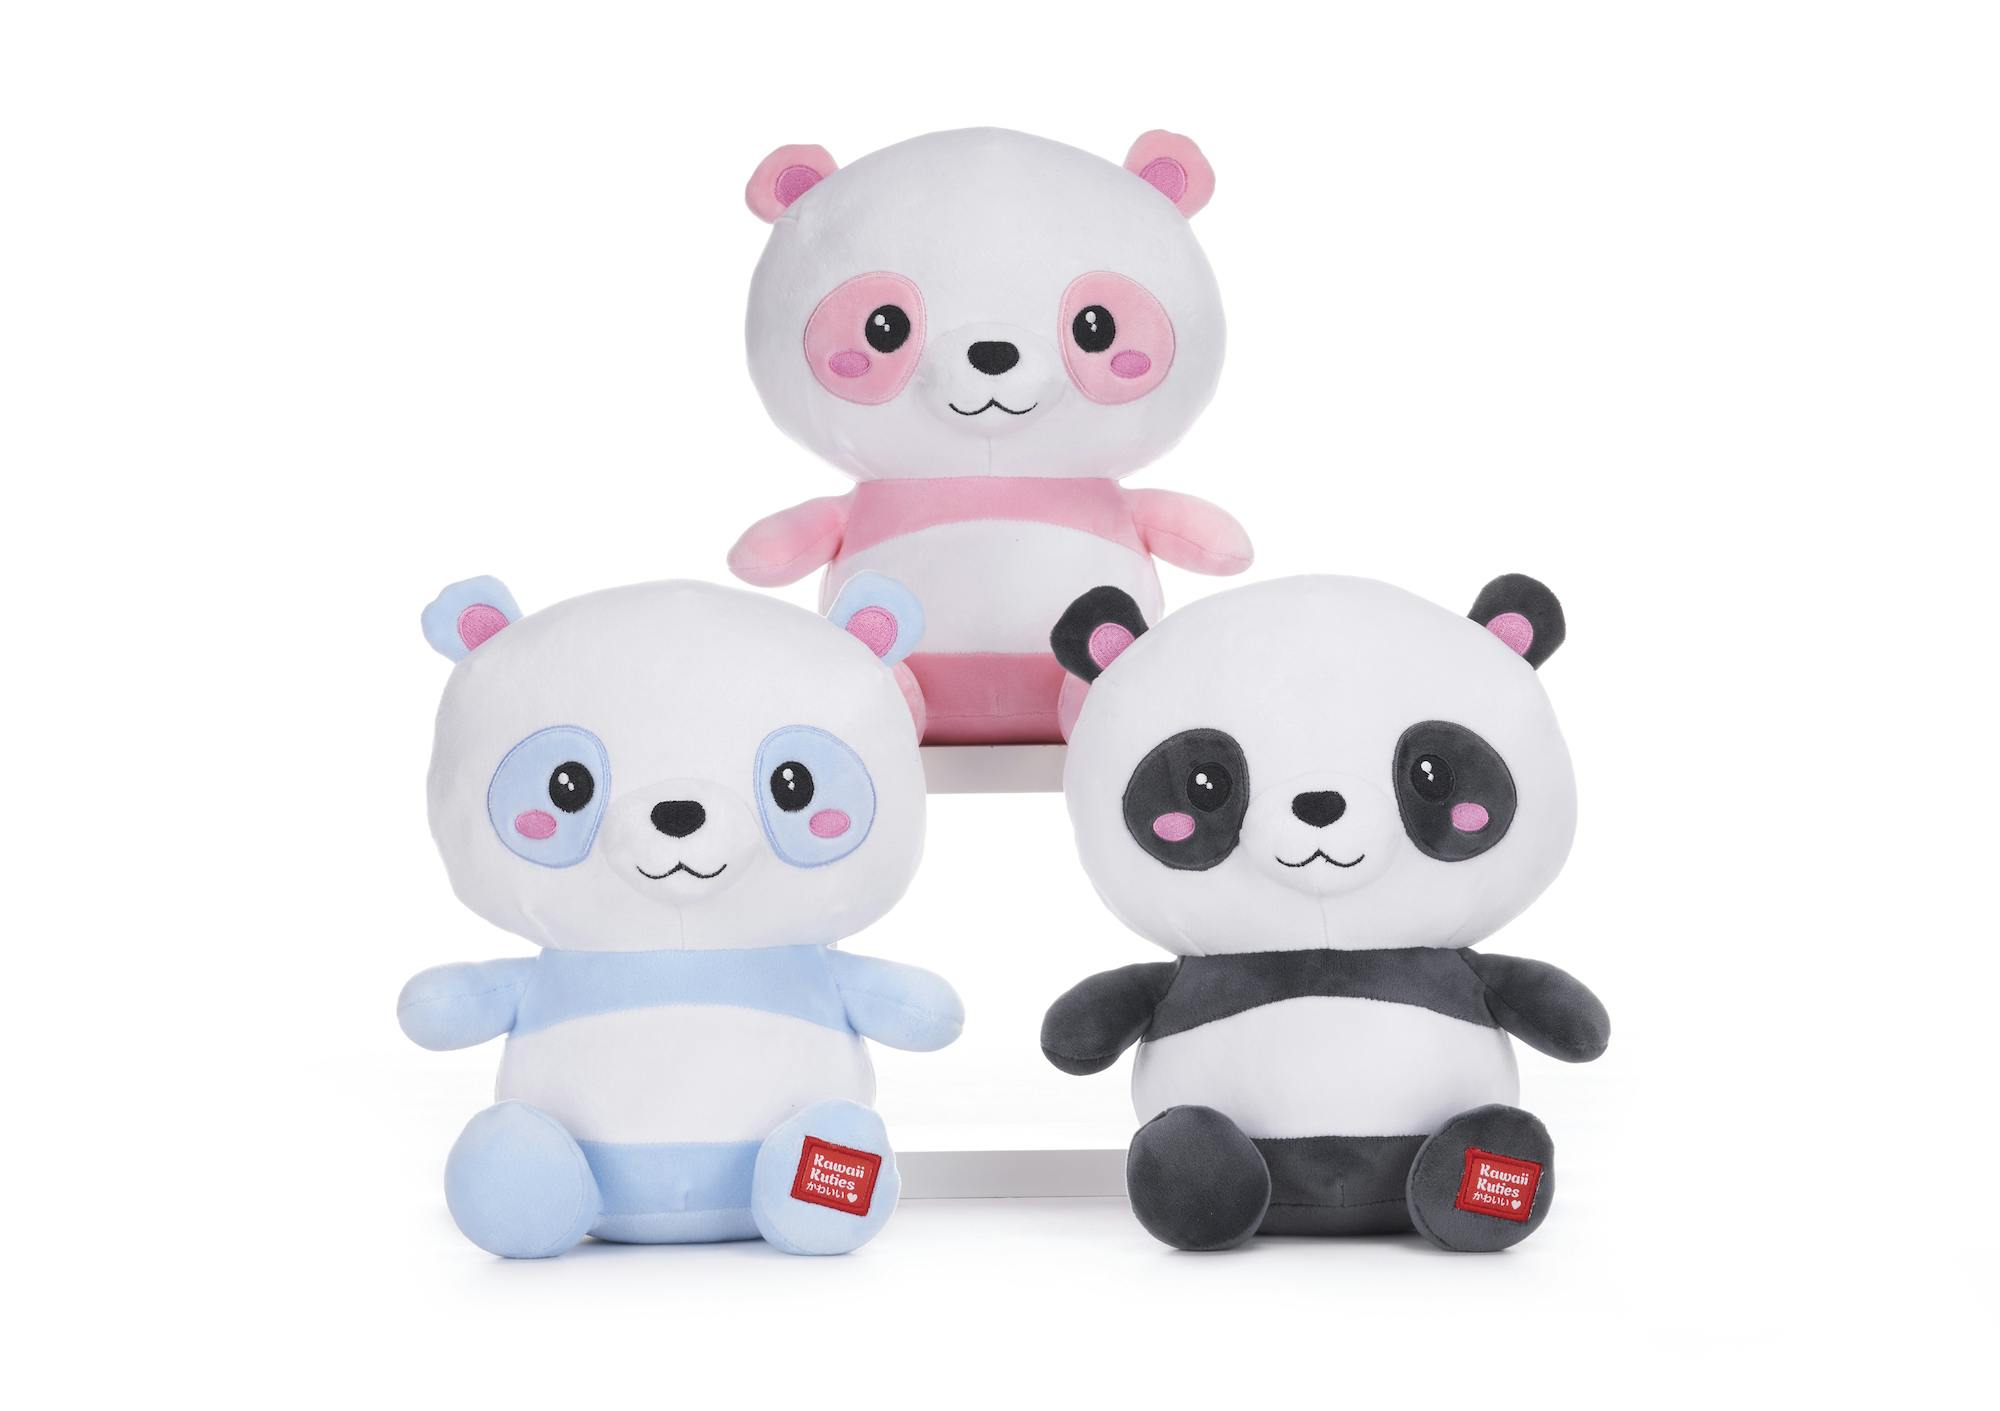 Product - Kuwaii Kuties S3 3 Ass Pandas